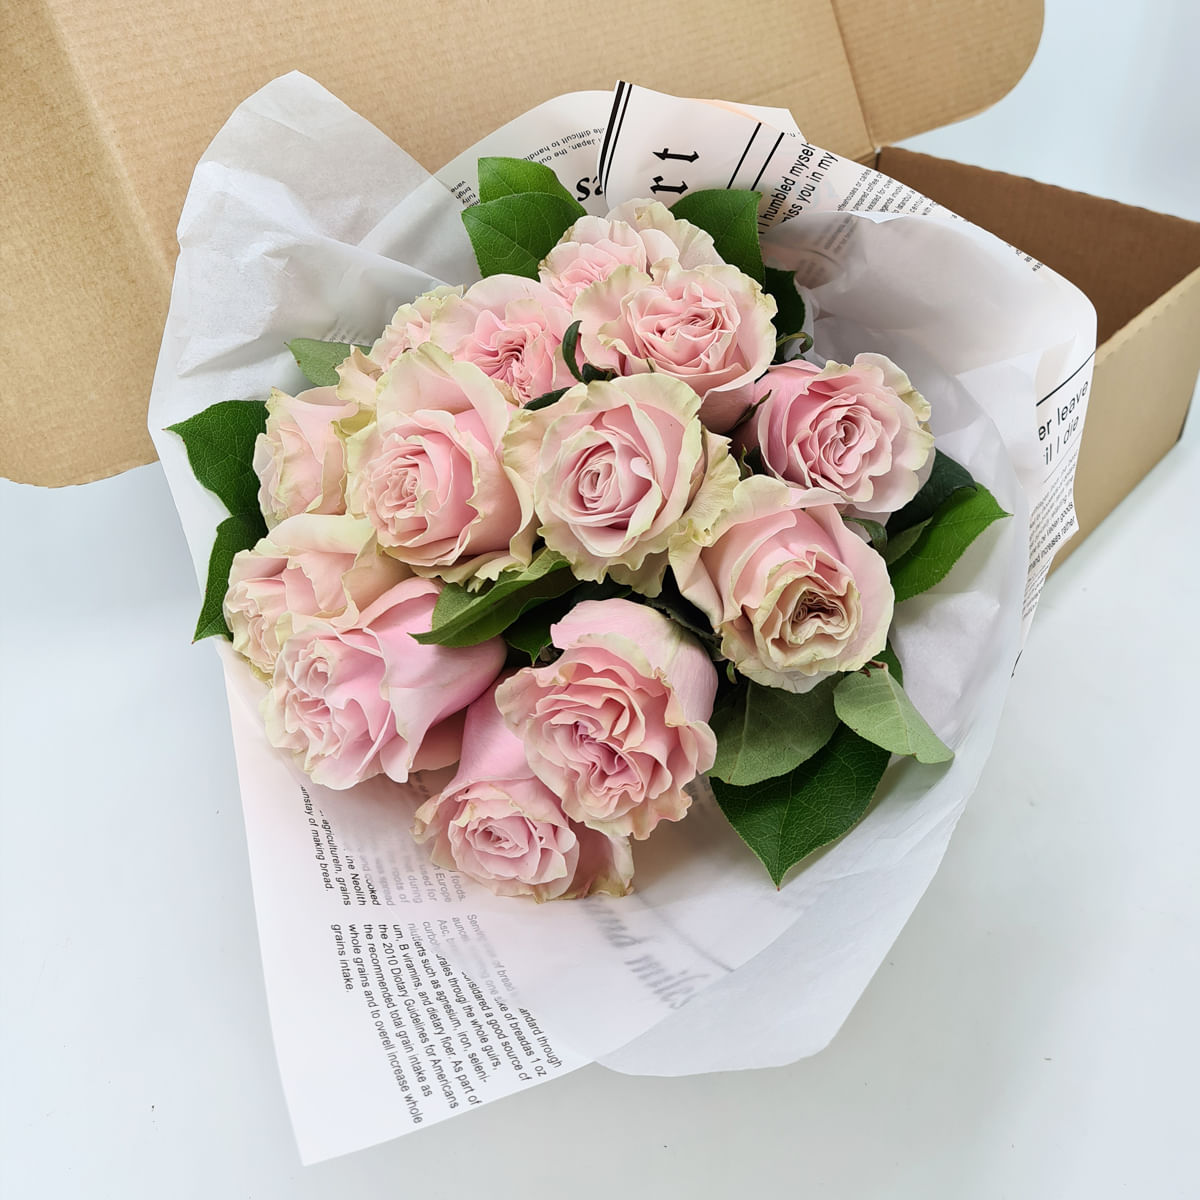 Buchet de 13 trandafiri roz in cutie Floria imagine 2022